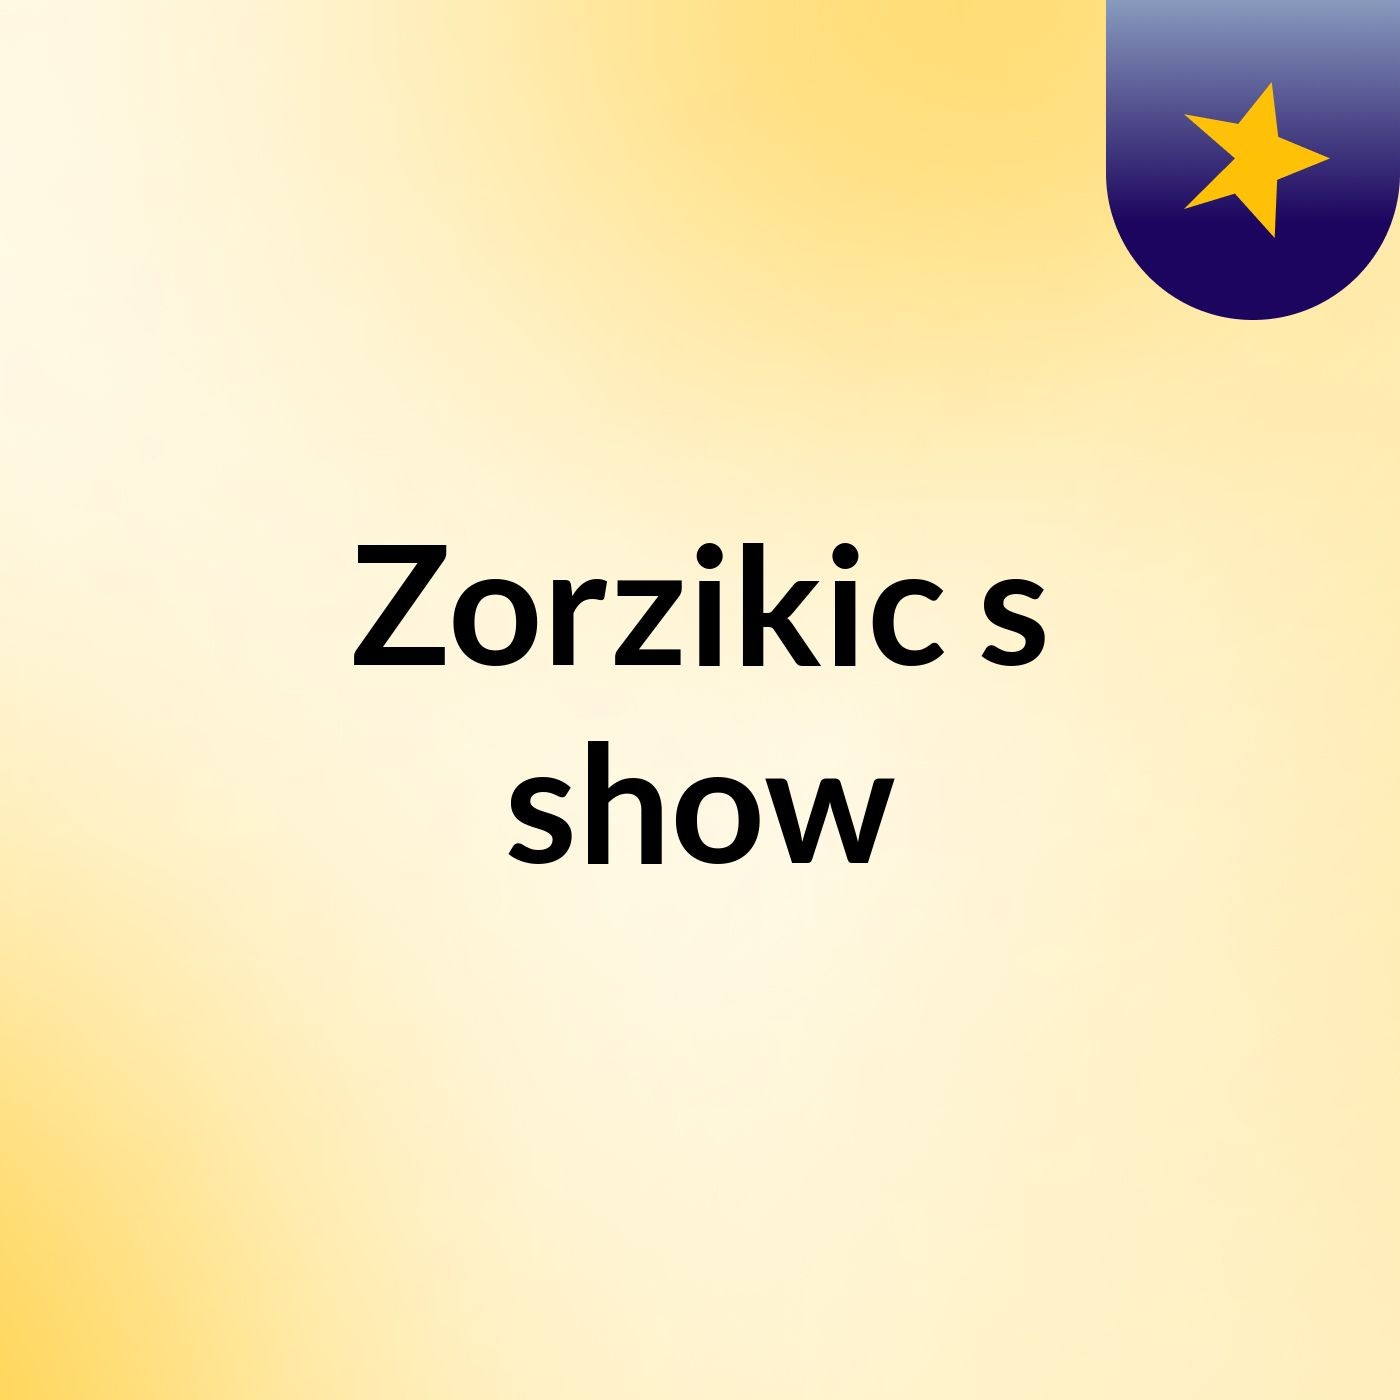 Zorzikic's show